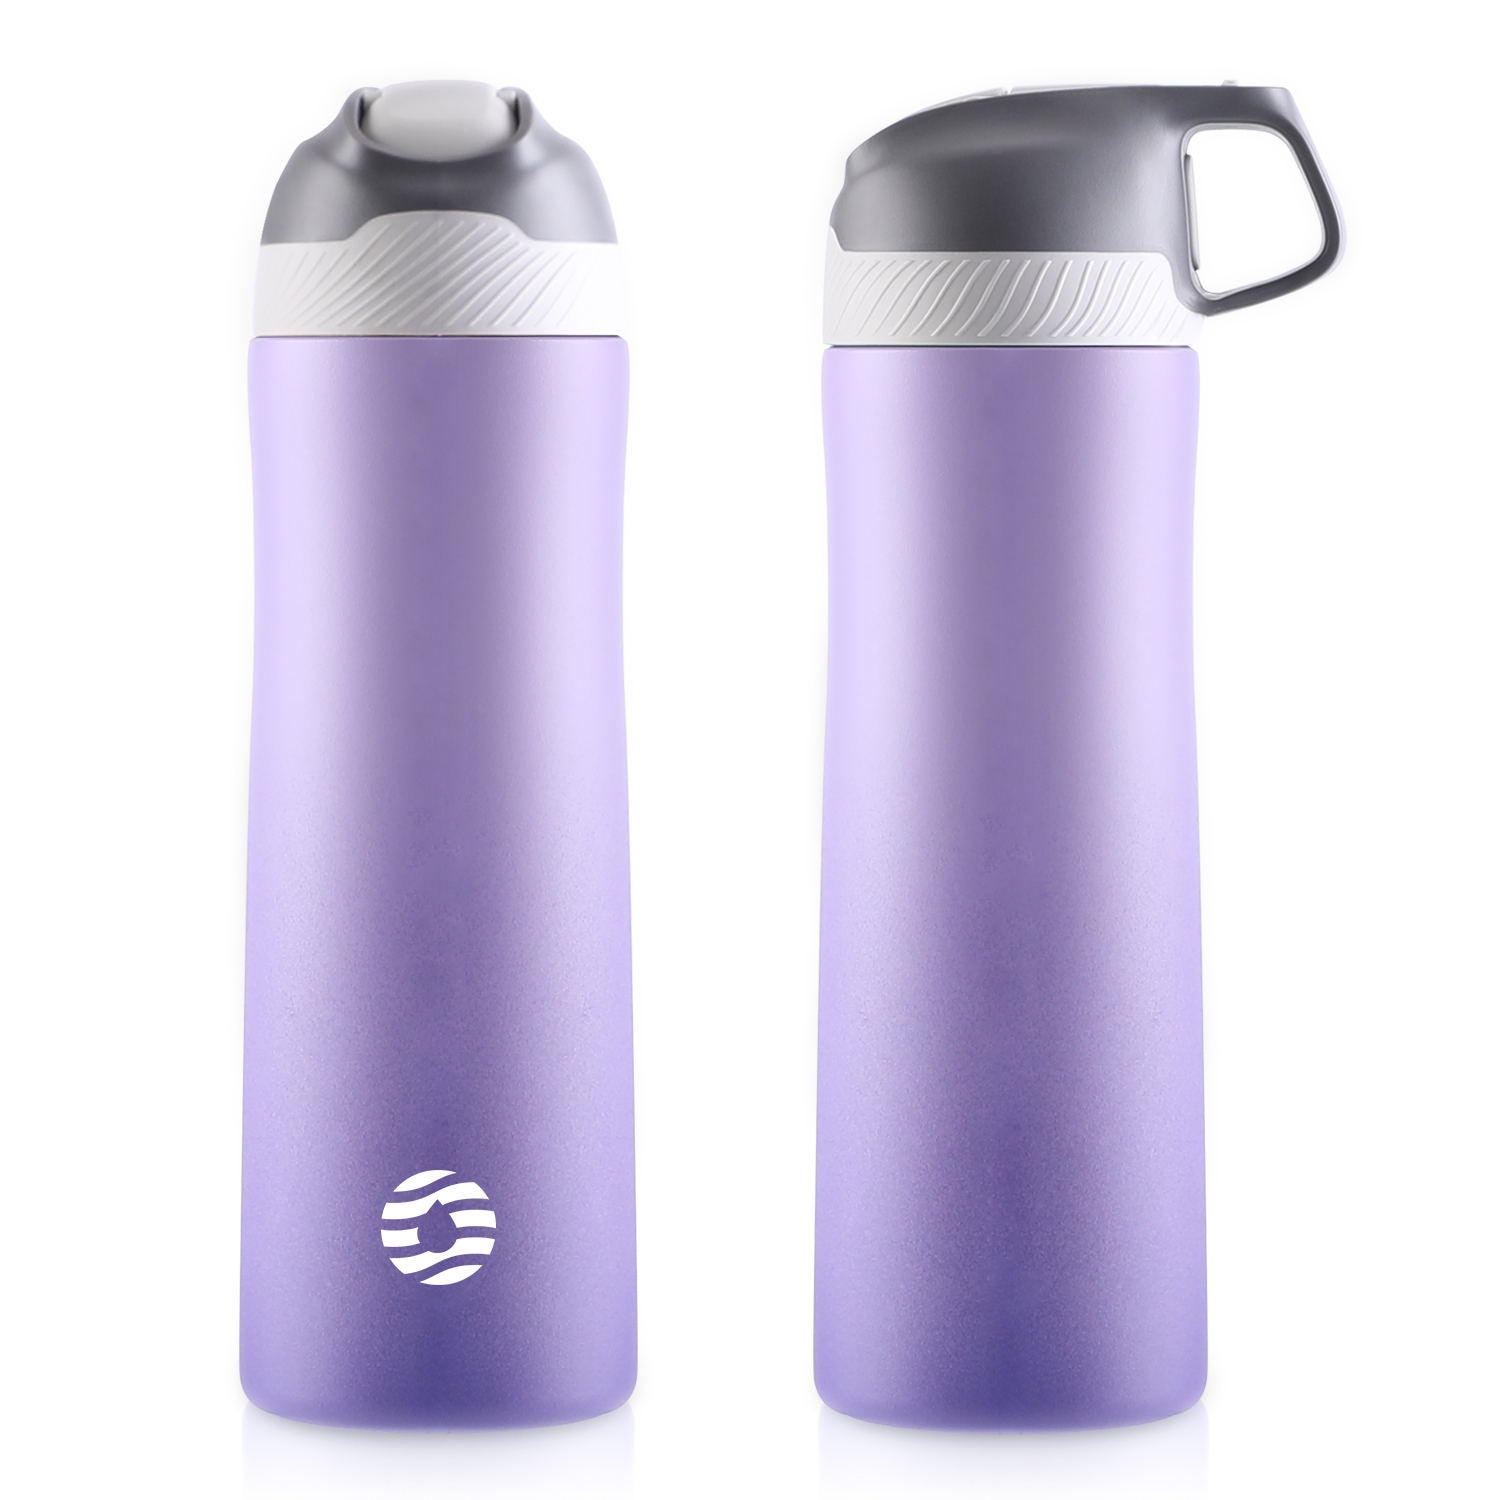 Das Bild zeigt zwei violette Edelstahl-Thermosflaschen, eine mit geschlossenem und eine mit integriertem Griff im Deckel.